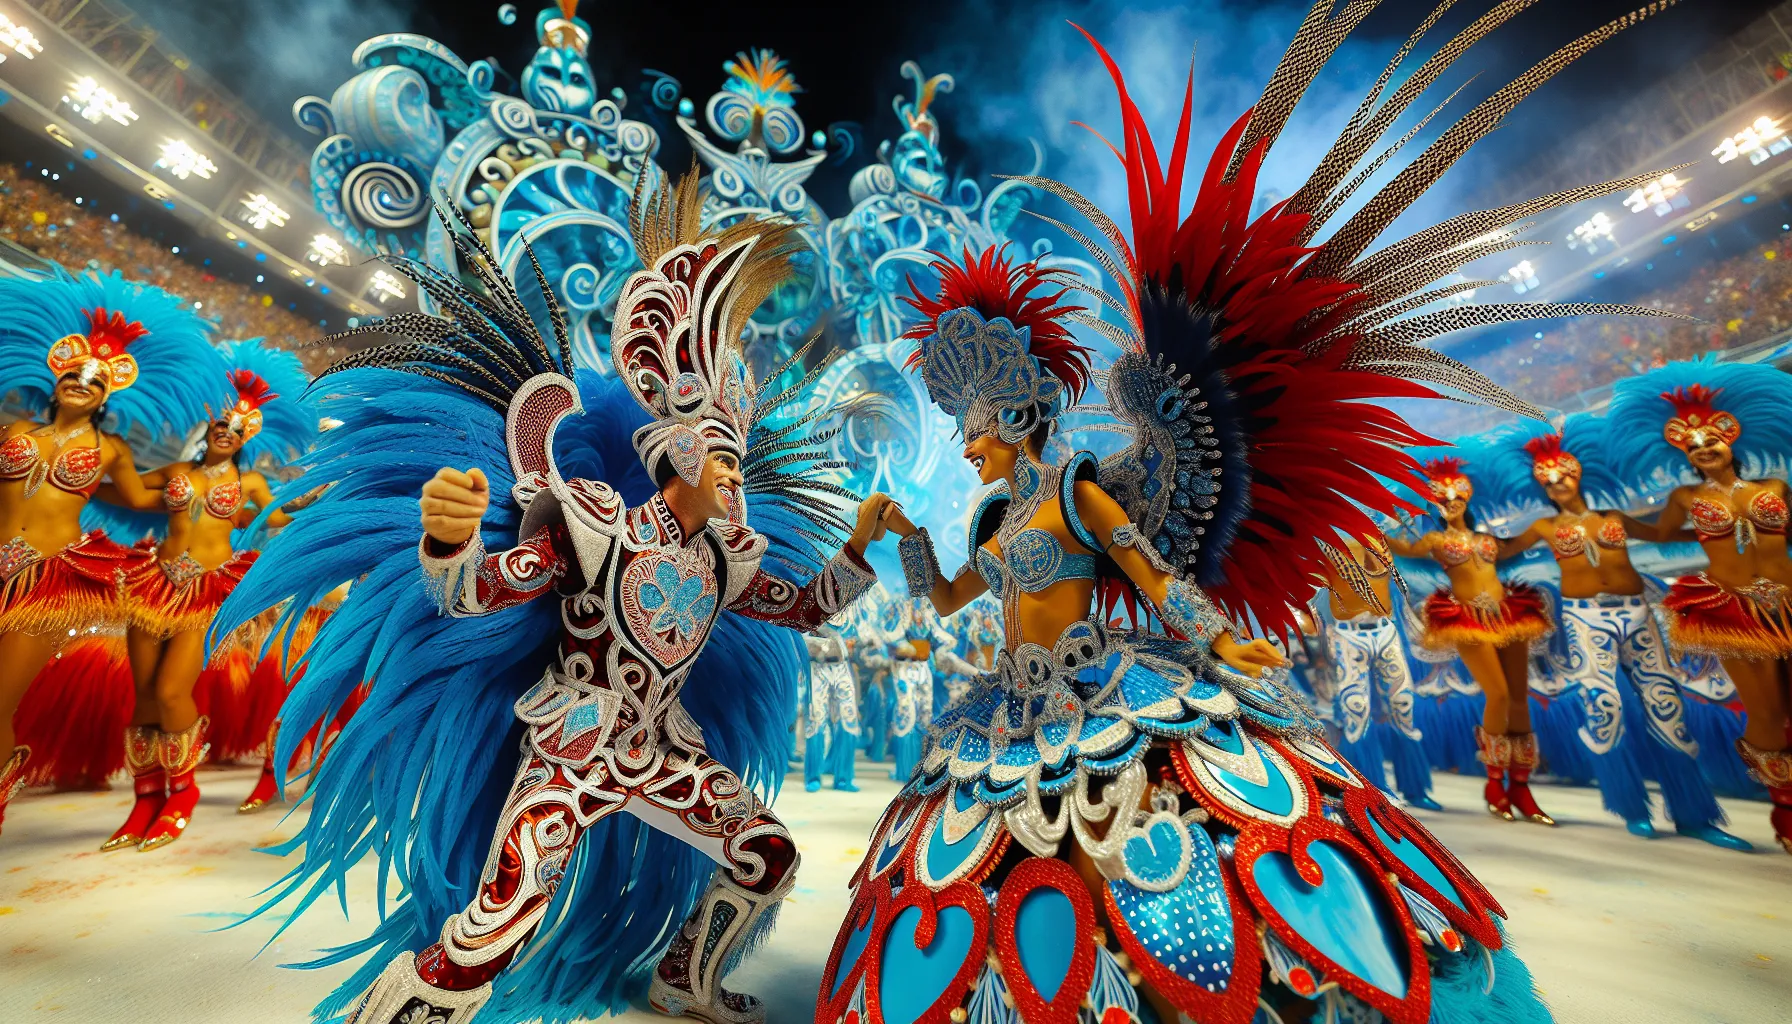 Parintins é uma cidade localizada no estado do Amazonas, no Brasil, conhecida por suas festas tradicionais. Uma das festas mais famosas e populares da região é o Festival Folclórico de Parintins, também conhecido como Festival de Boi-Bumbá.

O Festival de Parintins acontece todos os anos no último final de semana de junho e reúne milhares de pessoas de todo o país. A festa